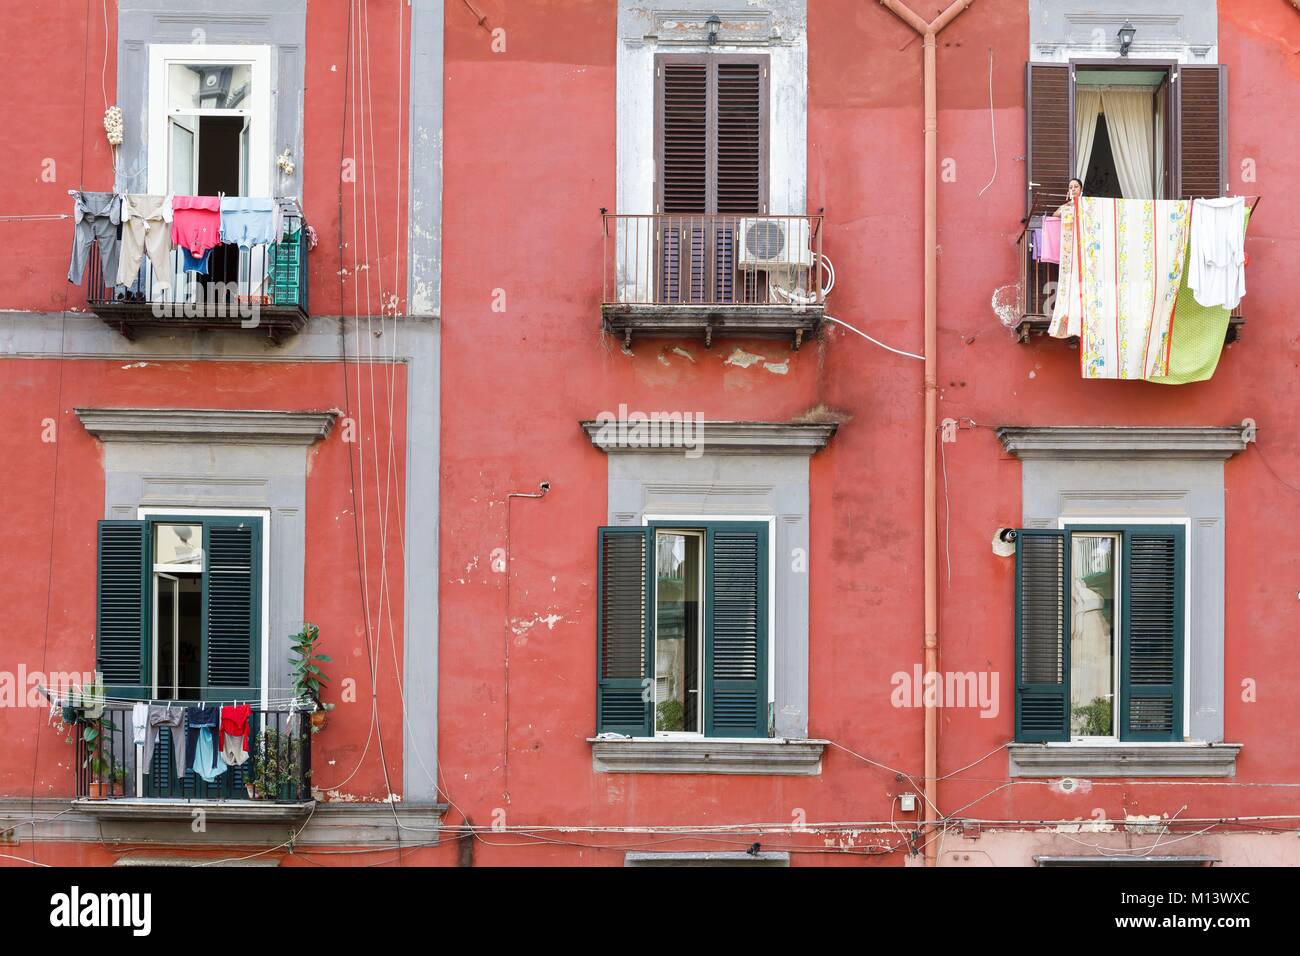 Italien, Kampanien, Neapel, die historische Altstadt zum Weltkulturerbe der UNESCO, Fassade Balkone Stockfoto